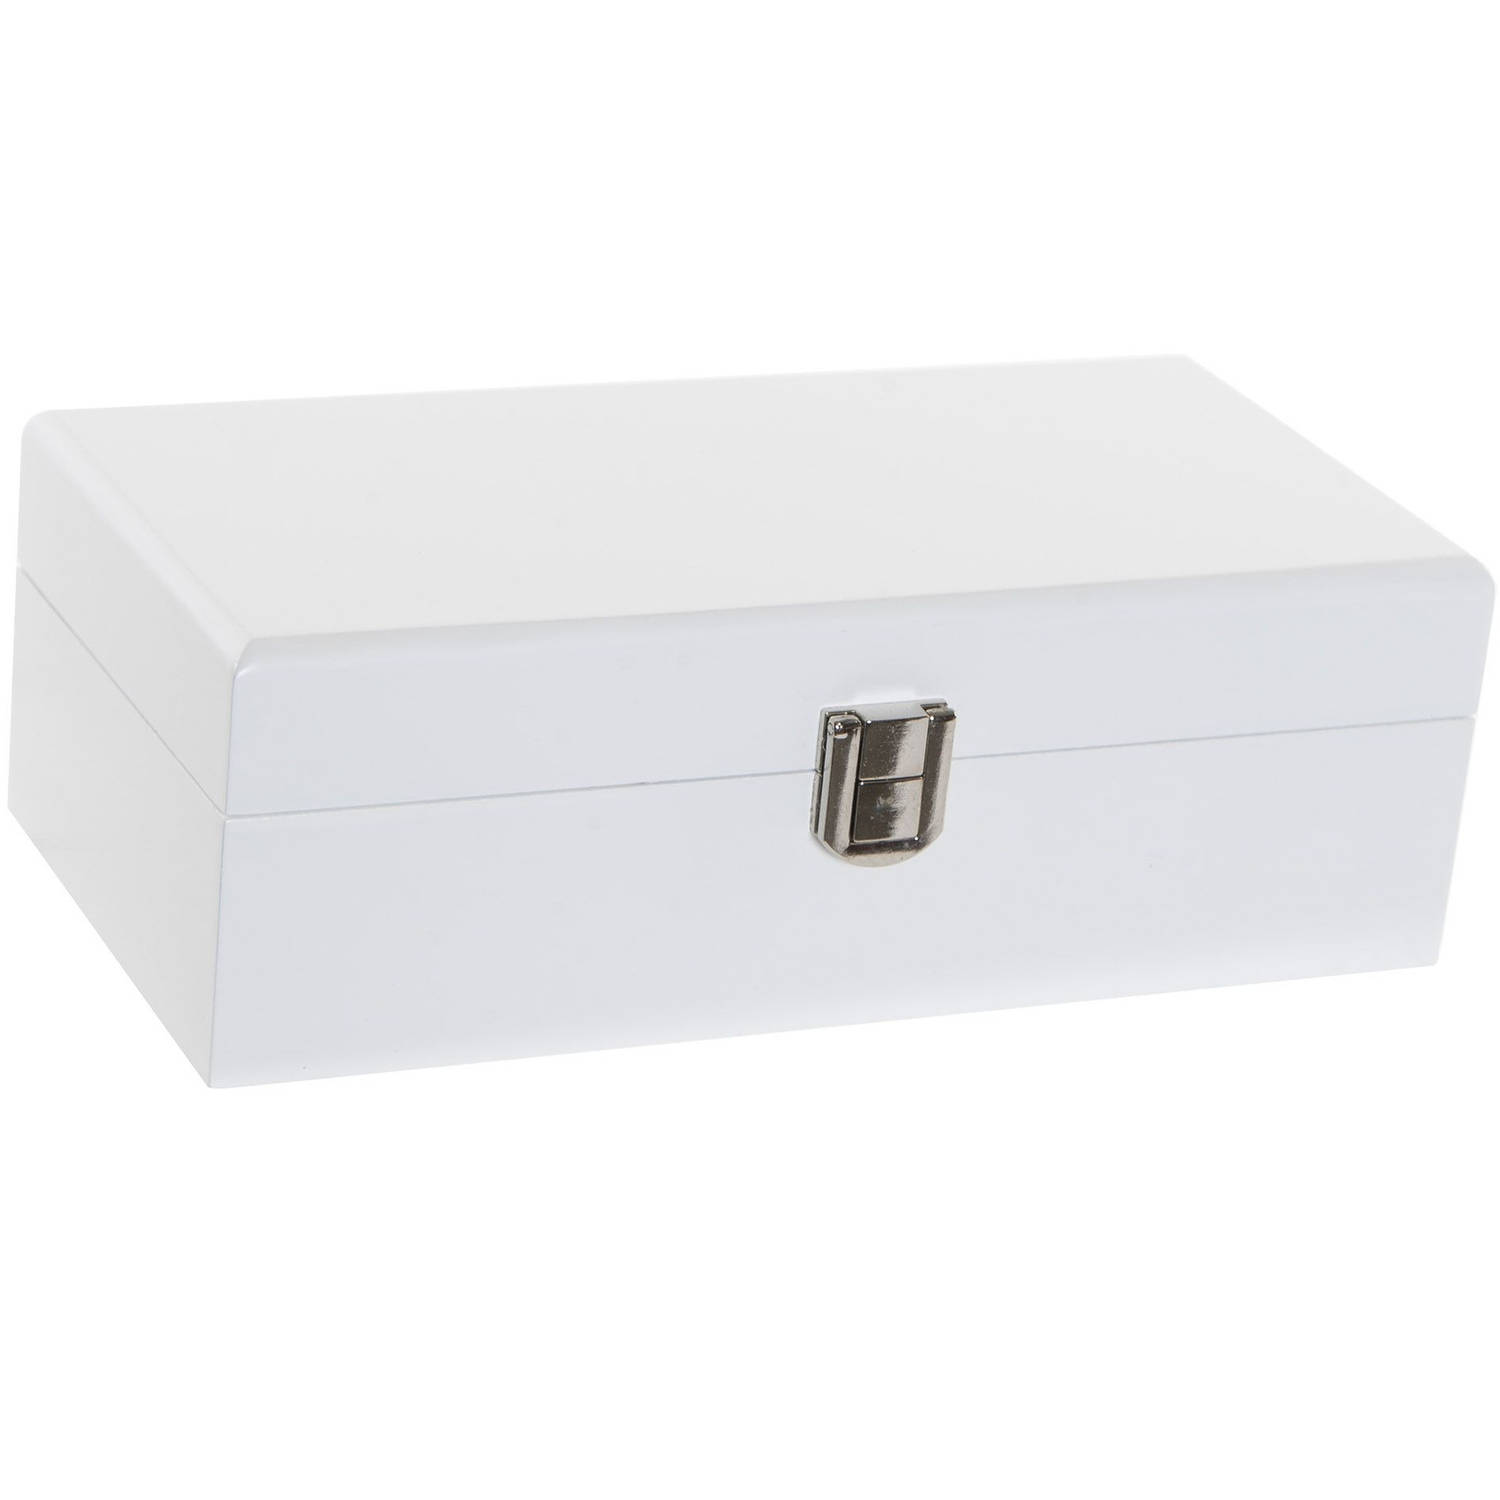 Onderdrukker Bedrijfsomschrijving sofa Sieradenkist/juwelenkist wit van hout 20 x 10 x 6 cm - Sieradendozen |  Blokker